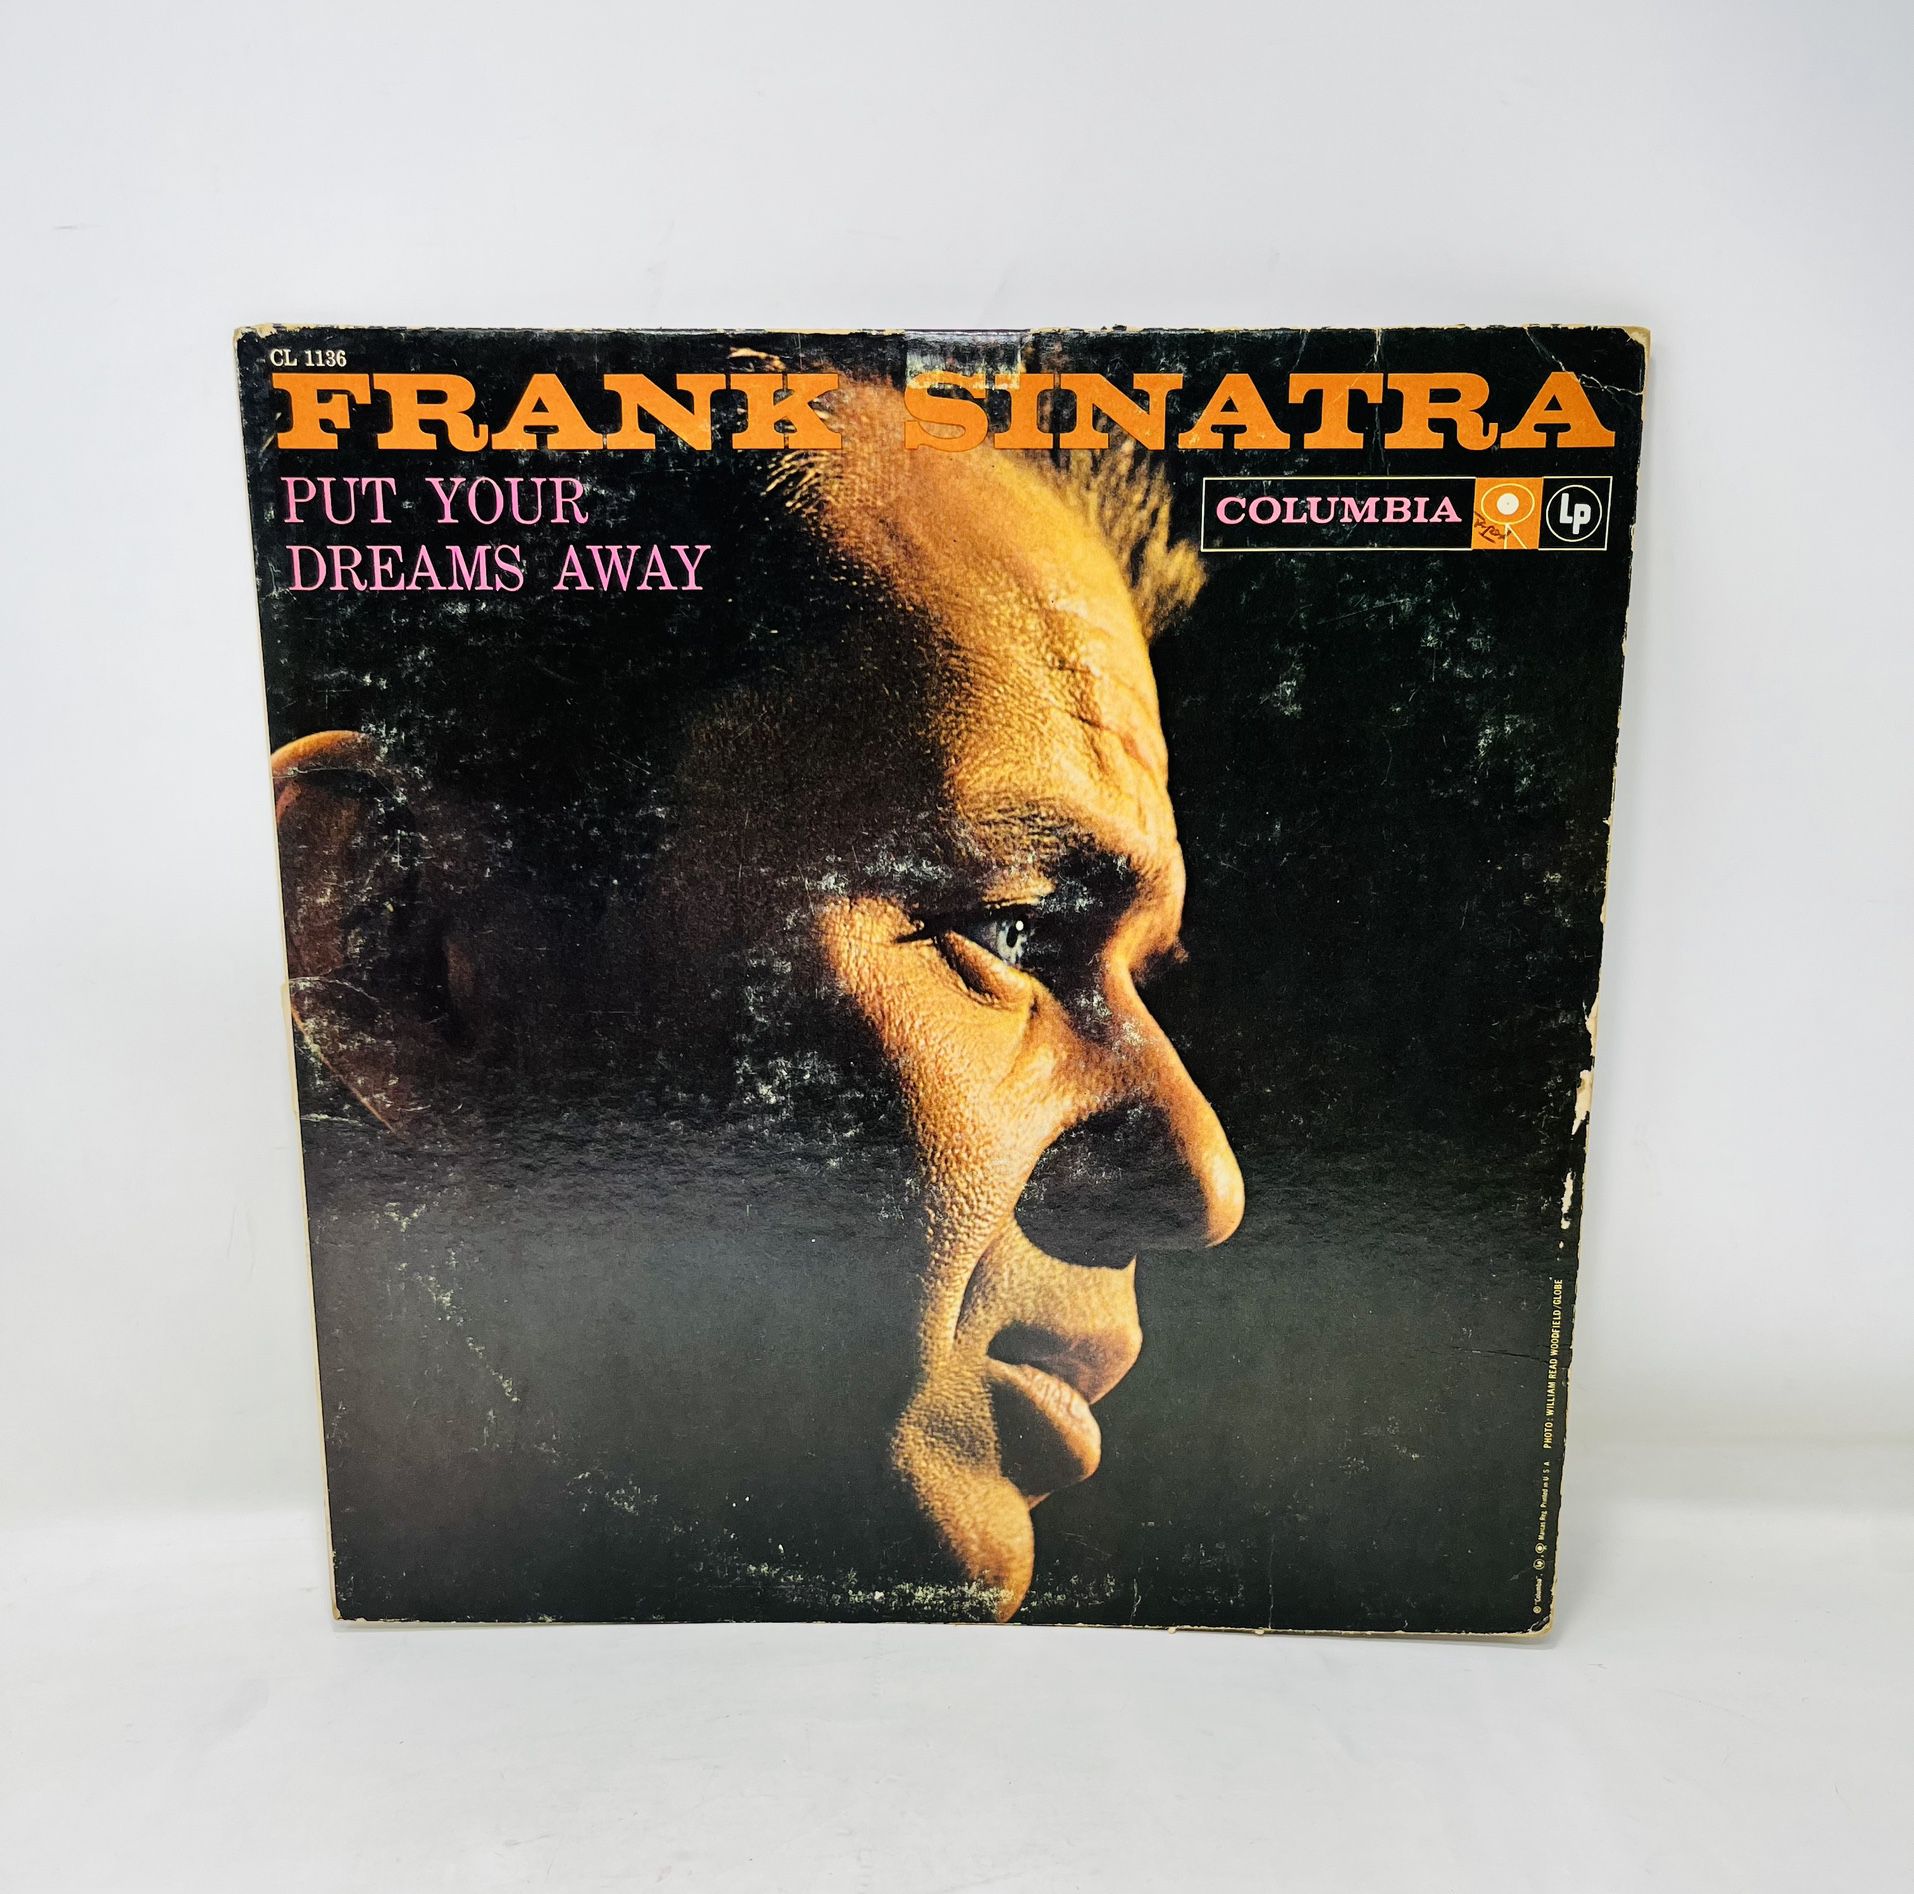 Frank Sinatra Put Your Dreams Away Columbia CL 1136 Record Album Vinyl LP